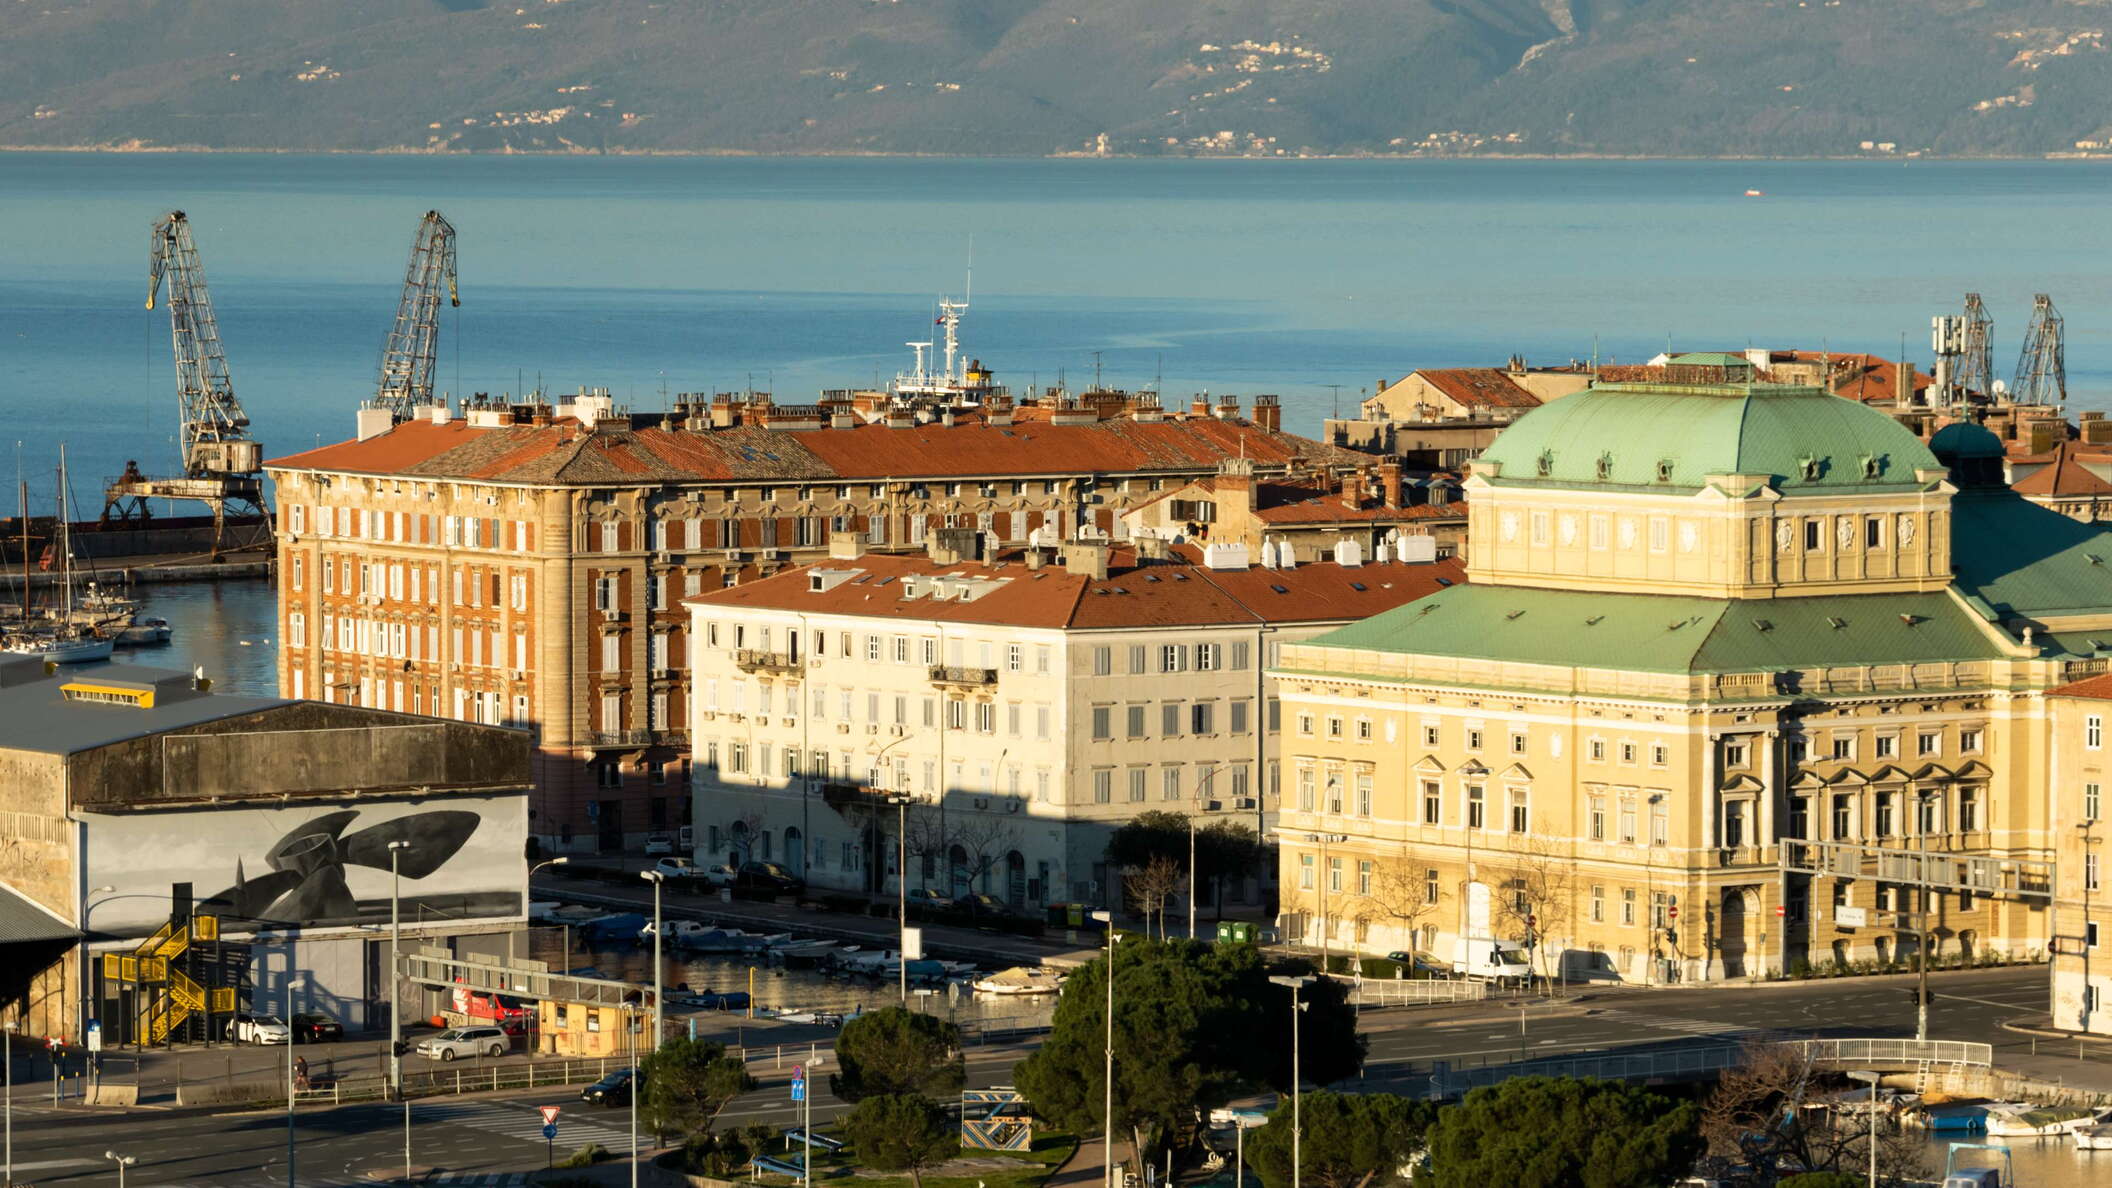 Rijeka | City centre and Kvarner Gulf